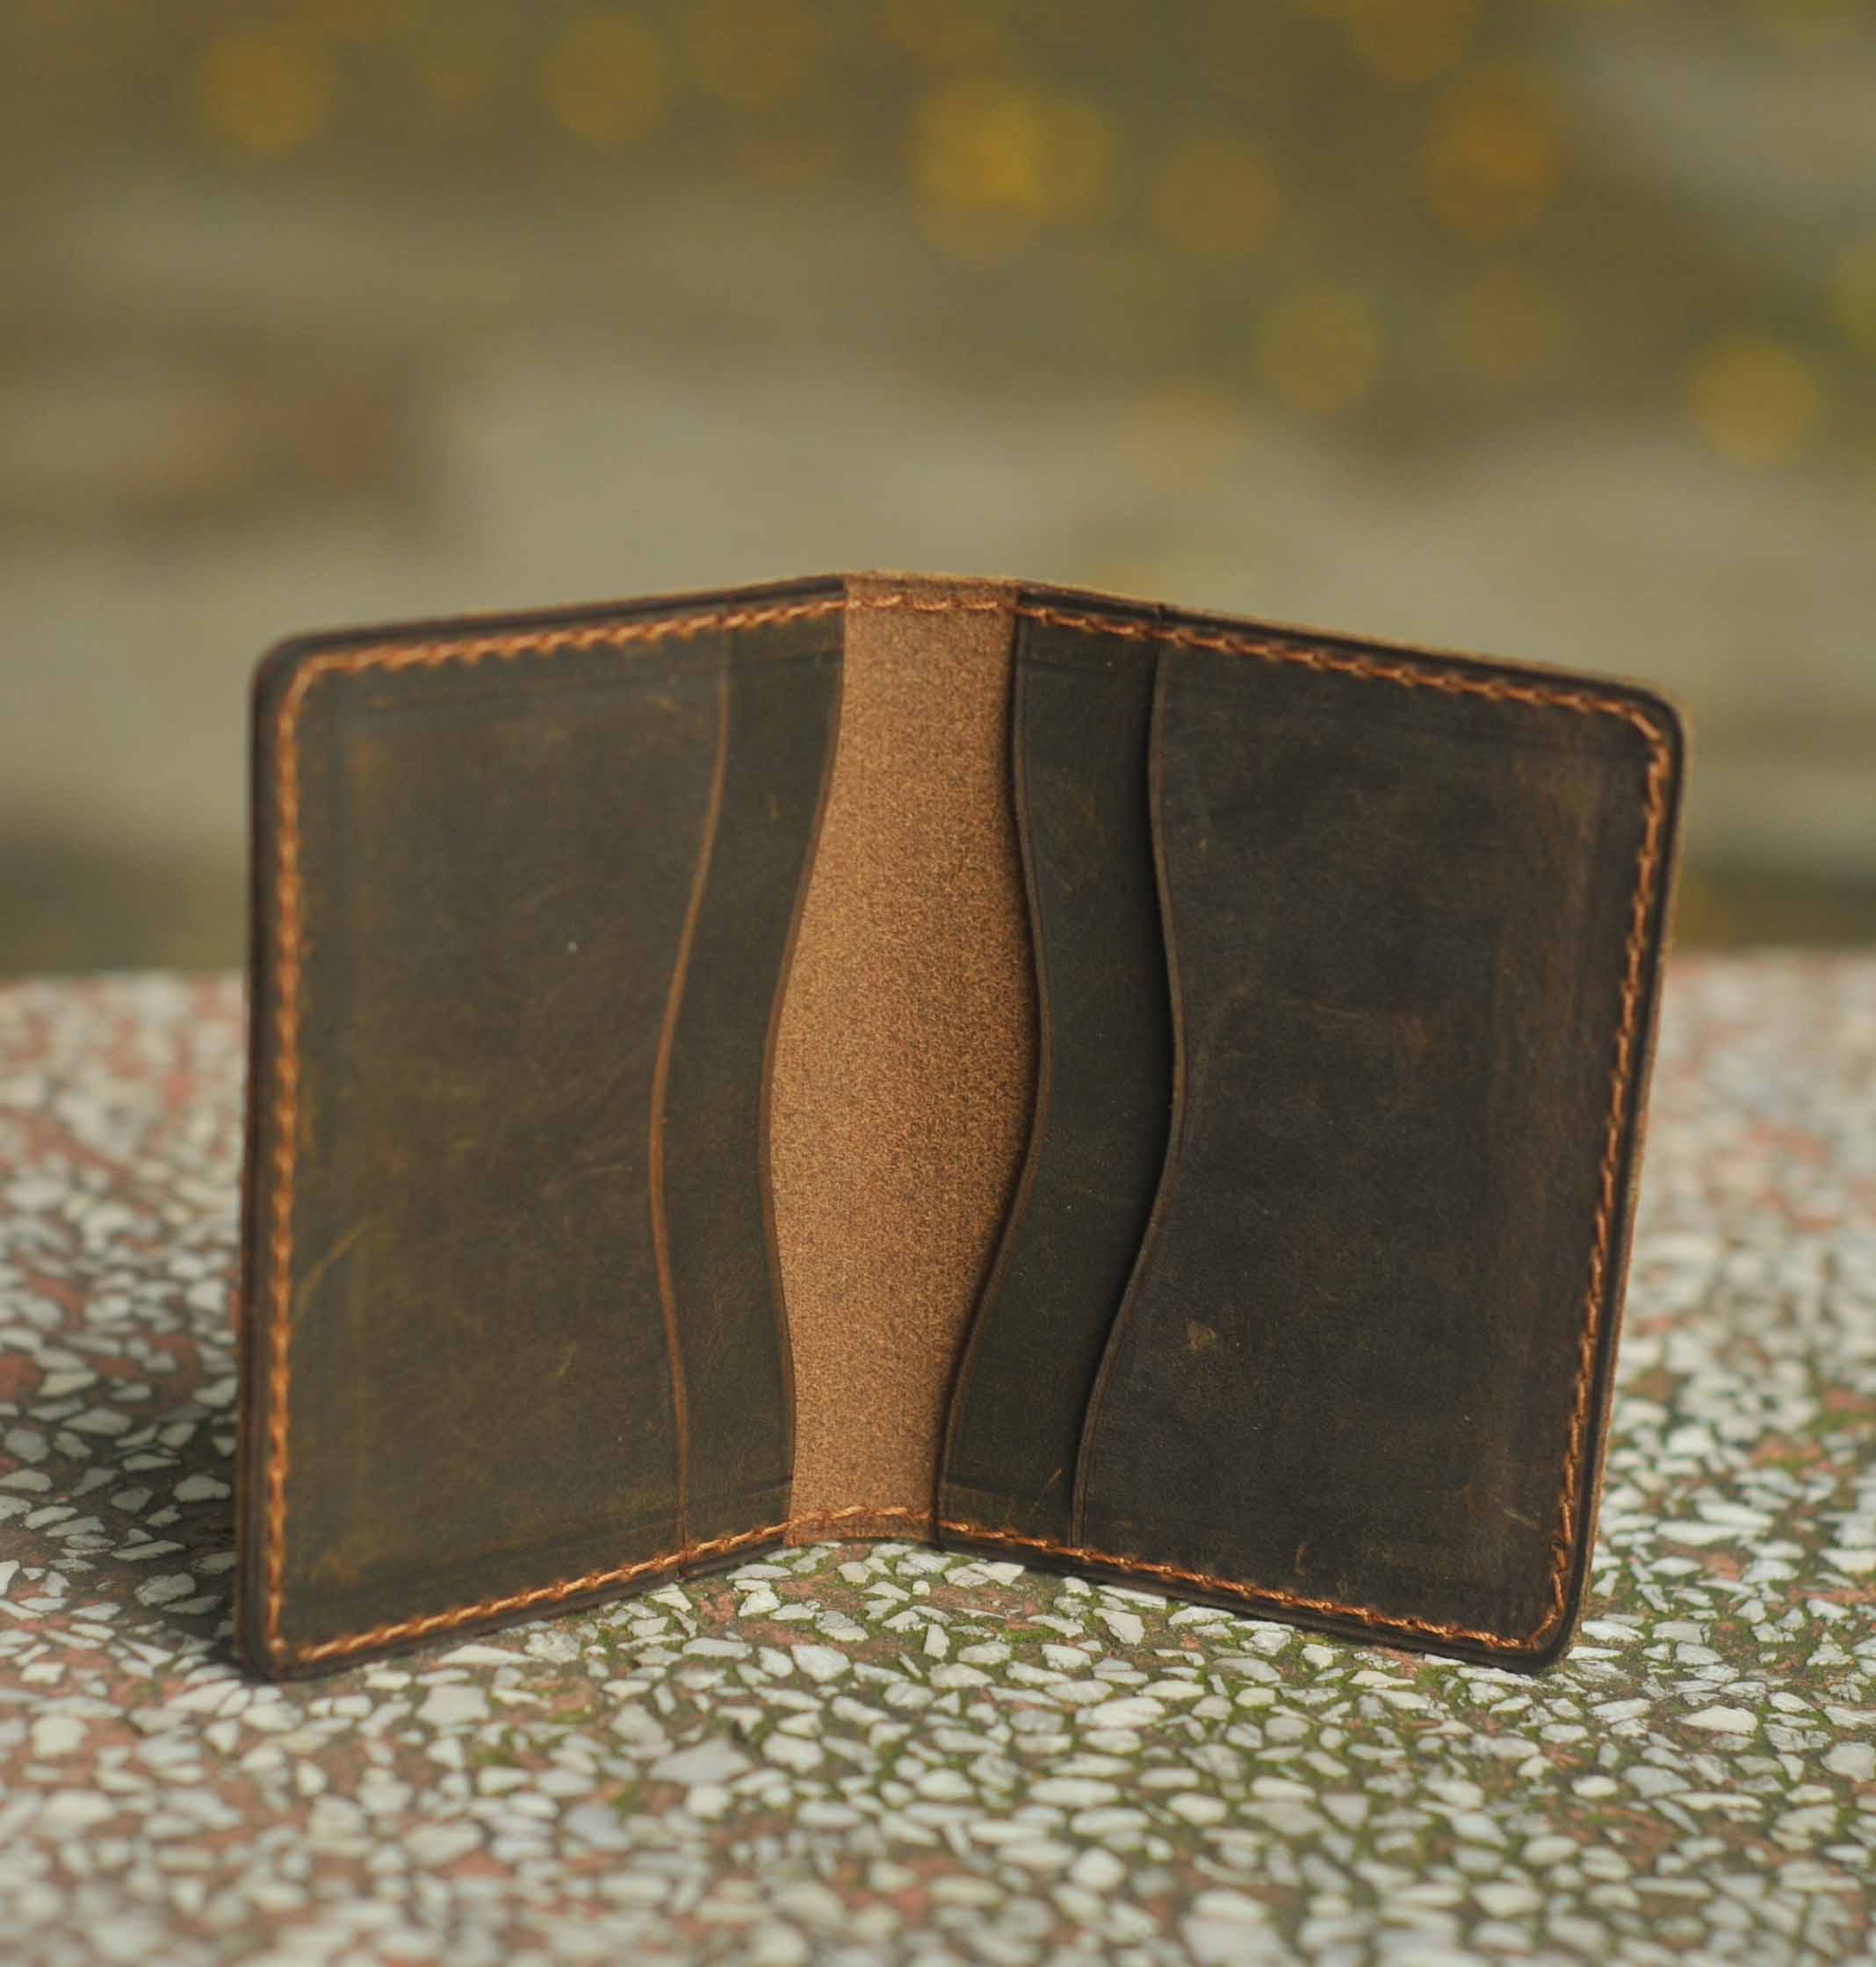 Bóp ví nam nữ đựng thẻ bỏ túi nhỏ gọn chất liệu da bò sáp chuẩn (dáng ví ngang mini)